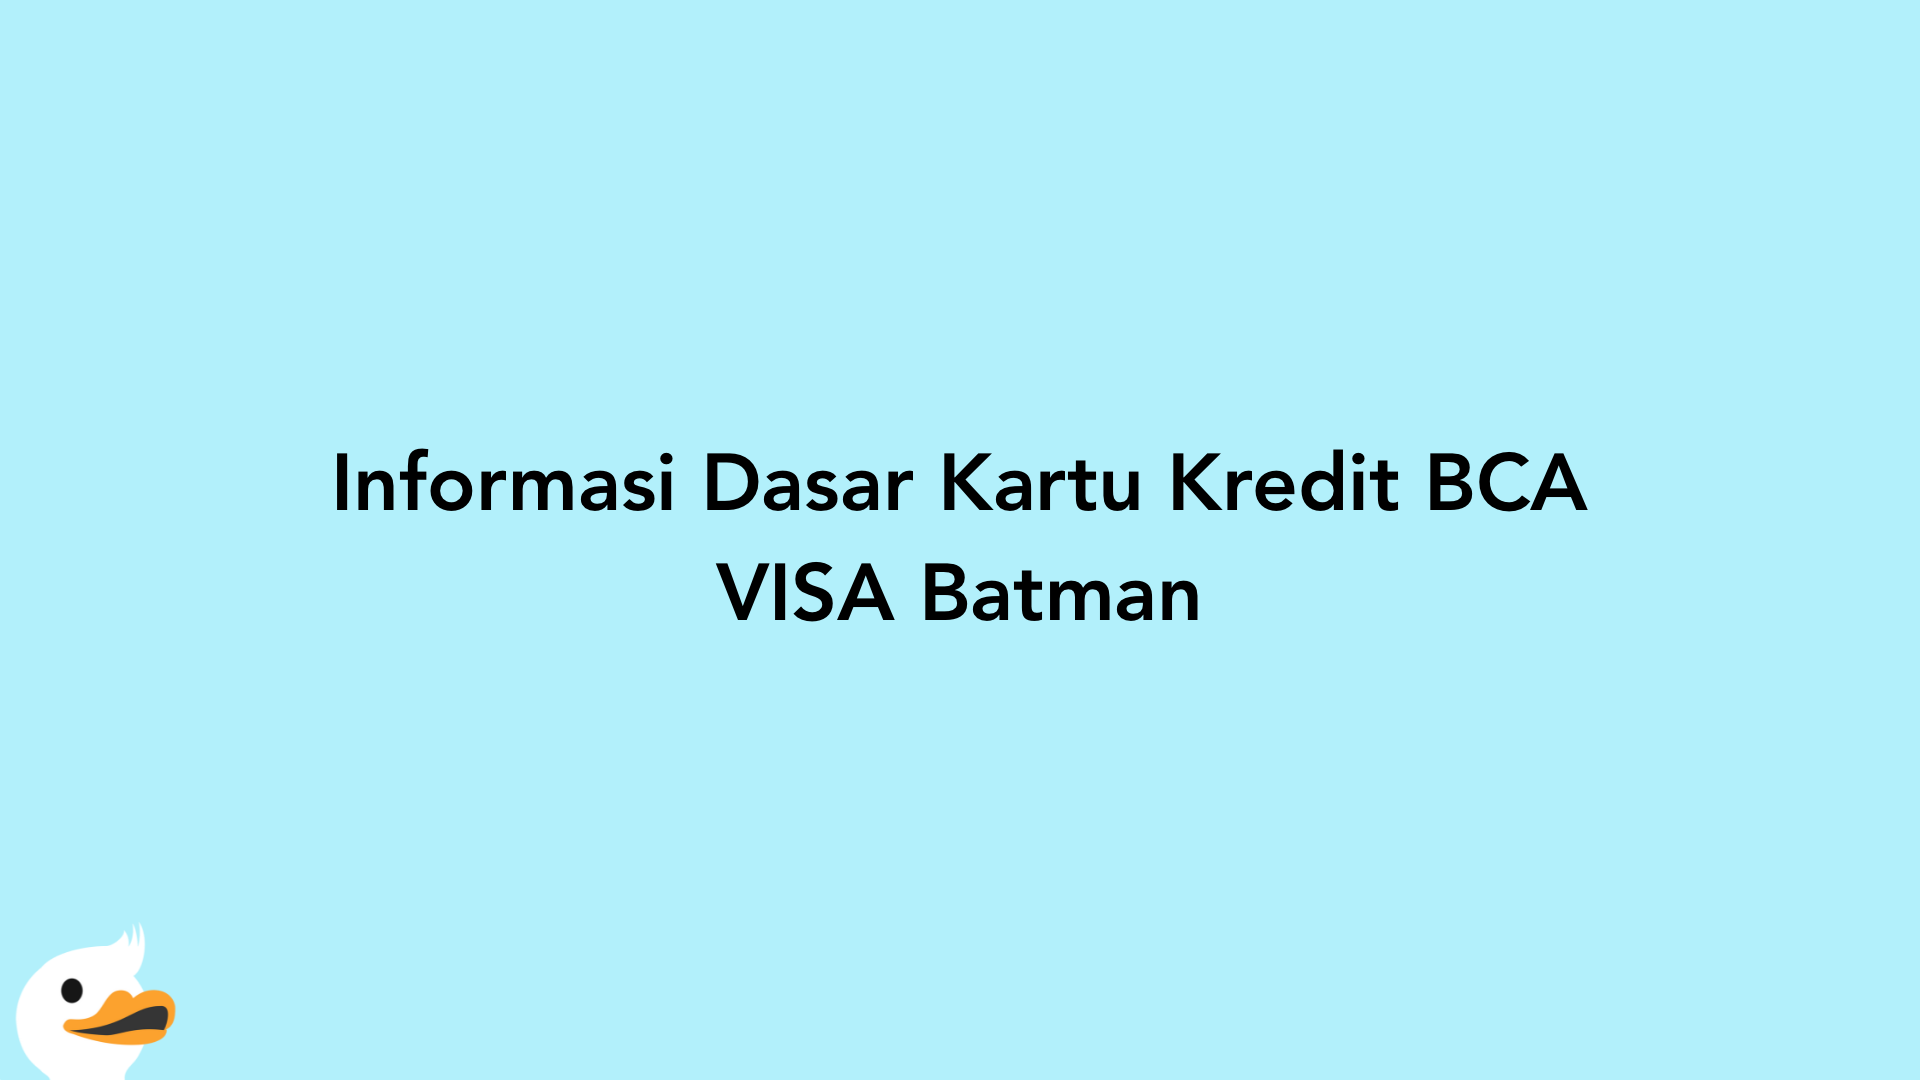 Informasi Dasar Kartu Kredit BCA VISA Batman